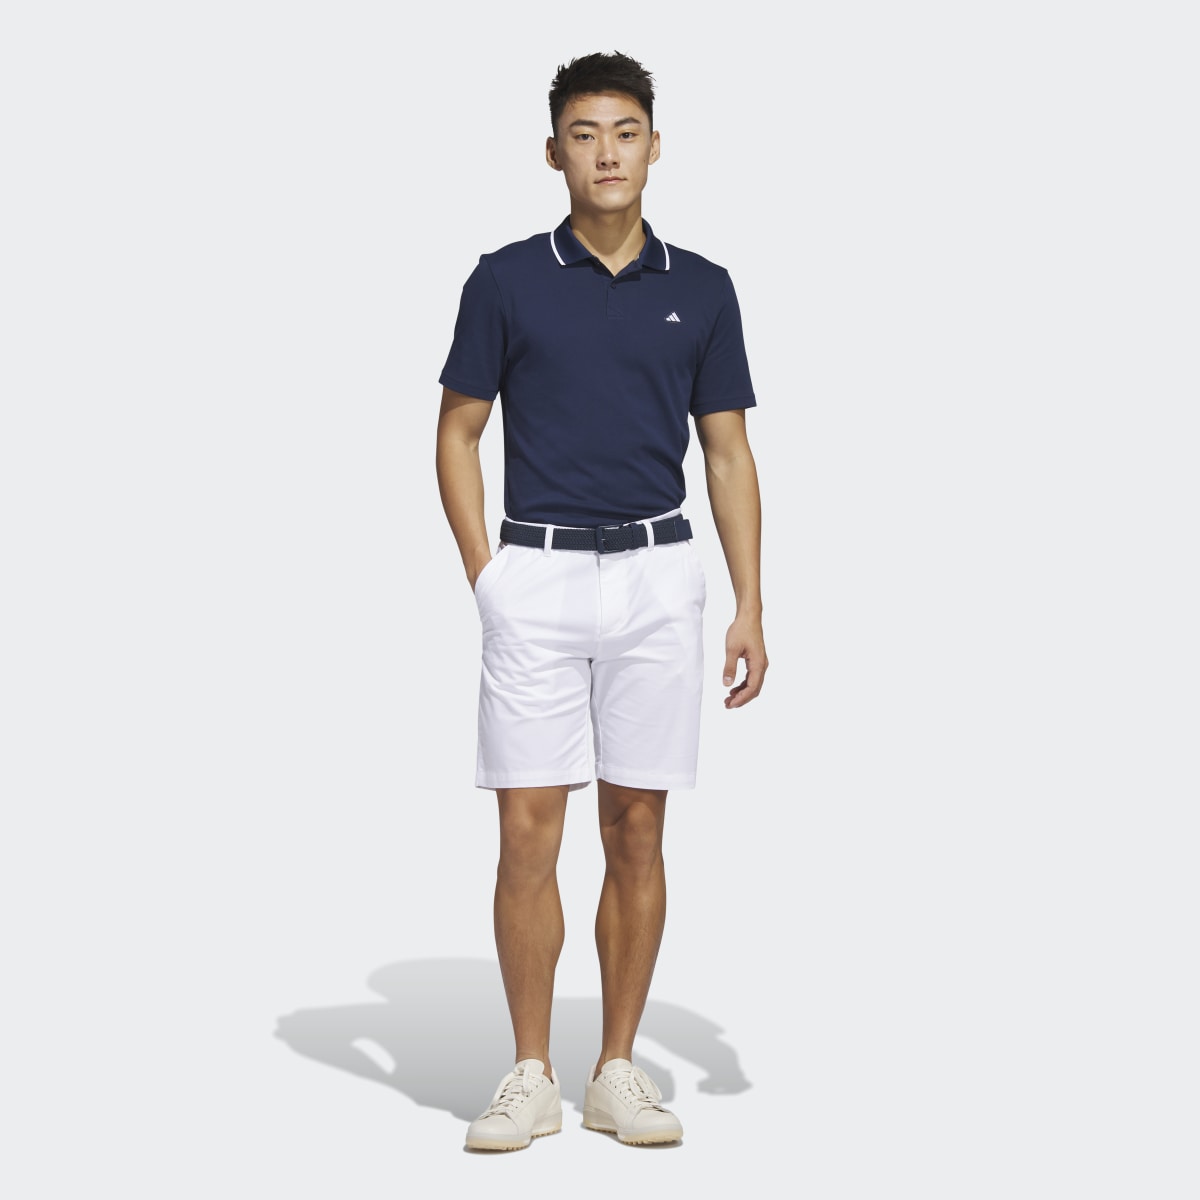 Adidas Go-To 9-Inch Golf Shorts. 5